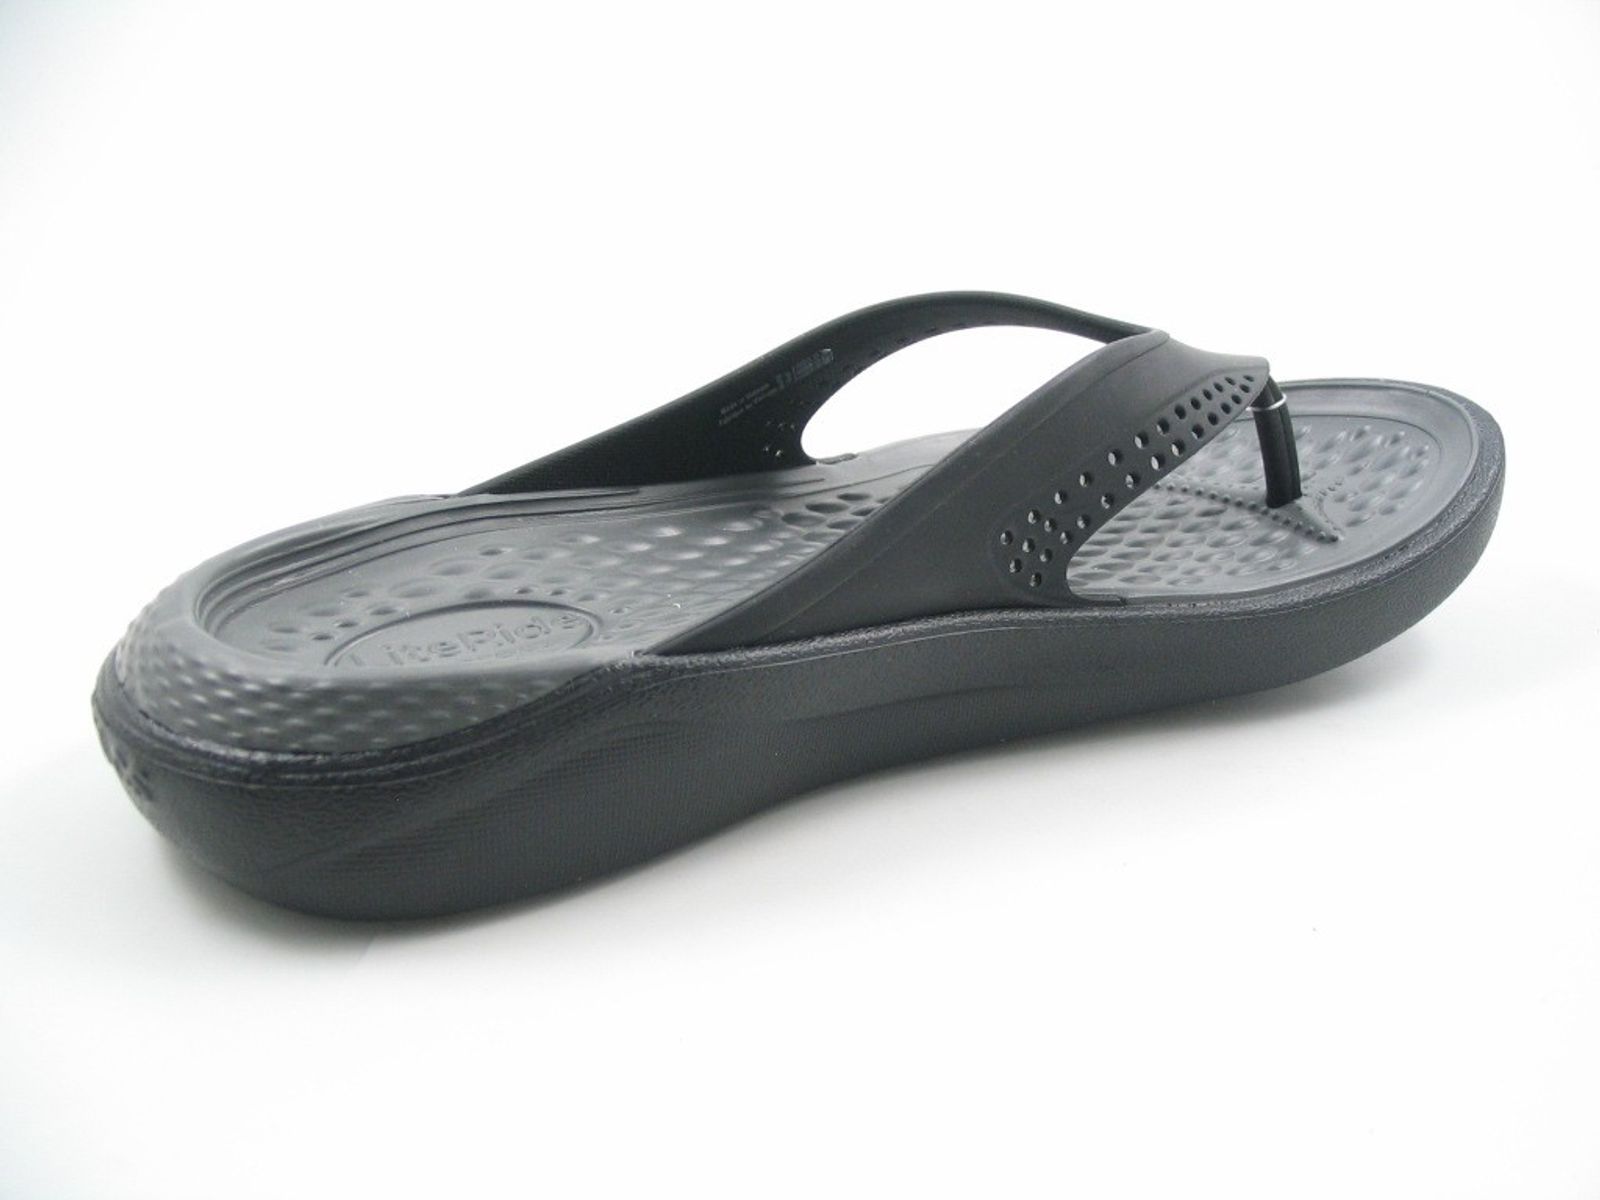 Schuh von Crocs, 43